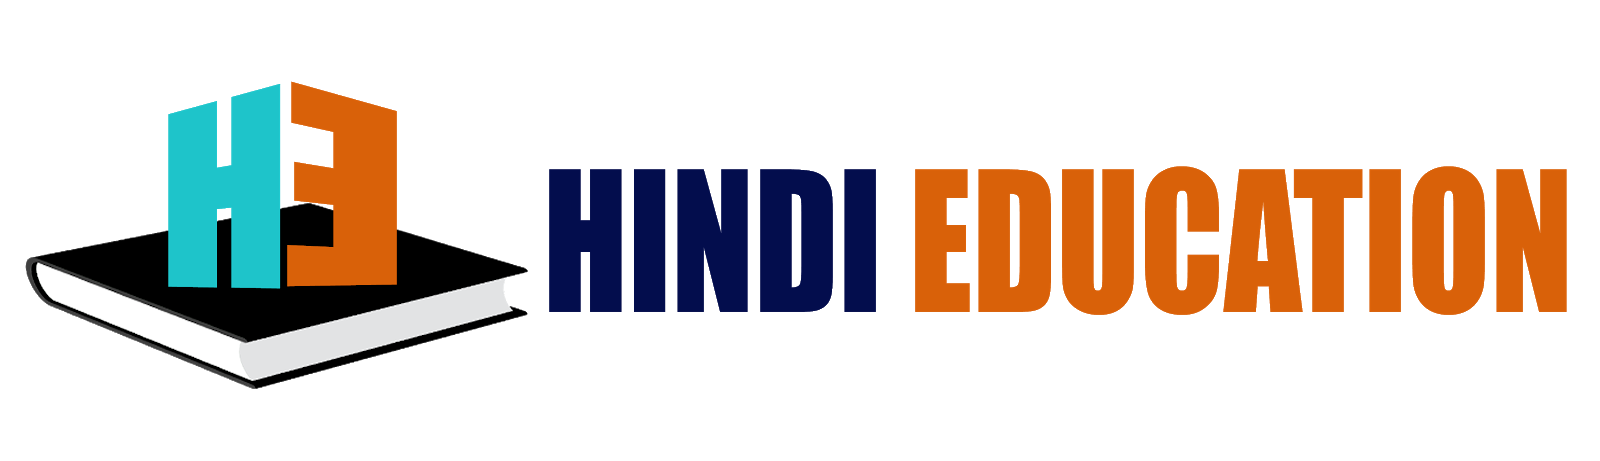 hindieducation